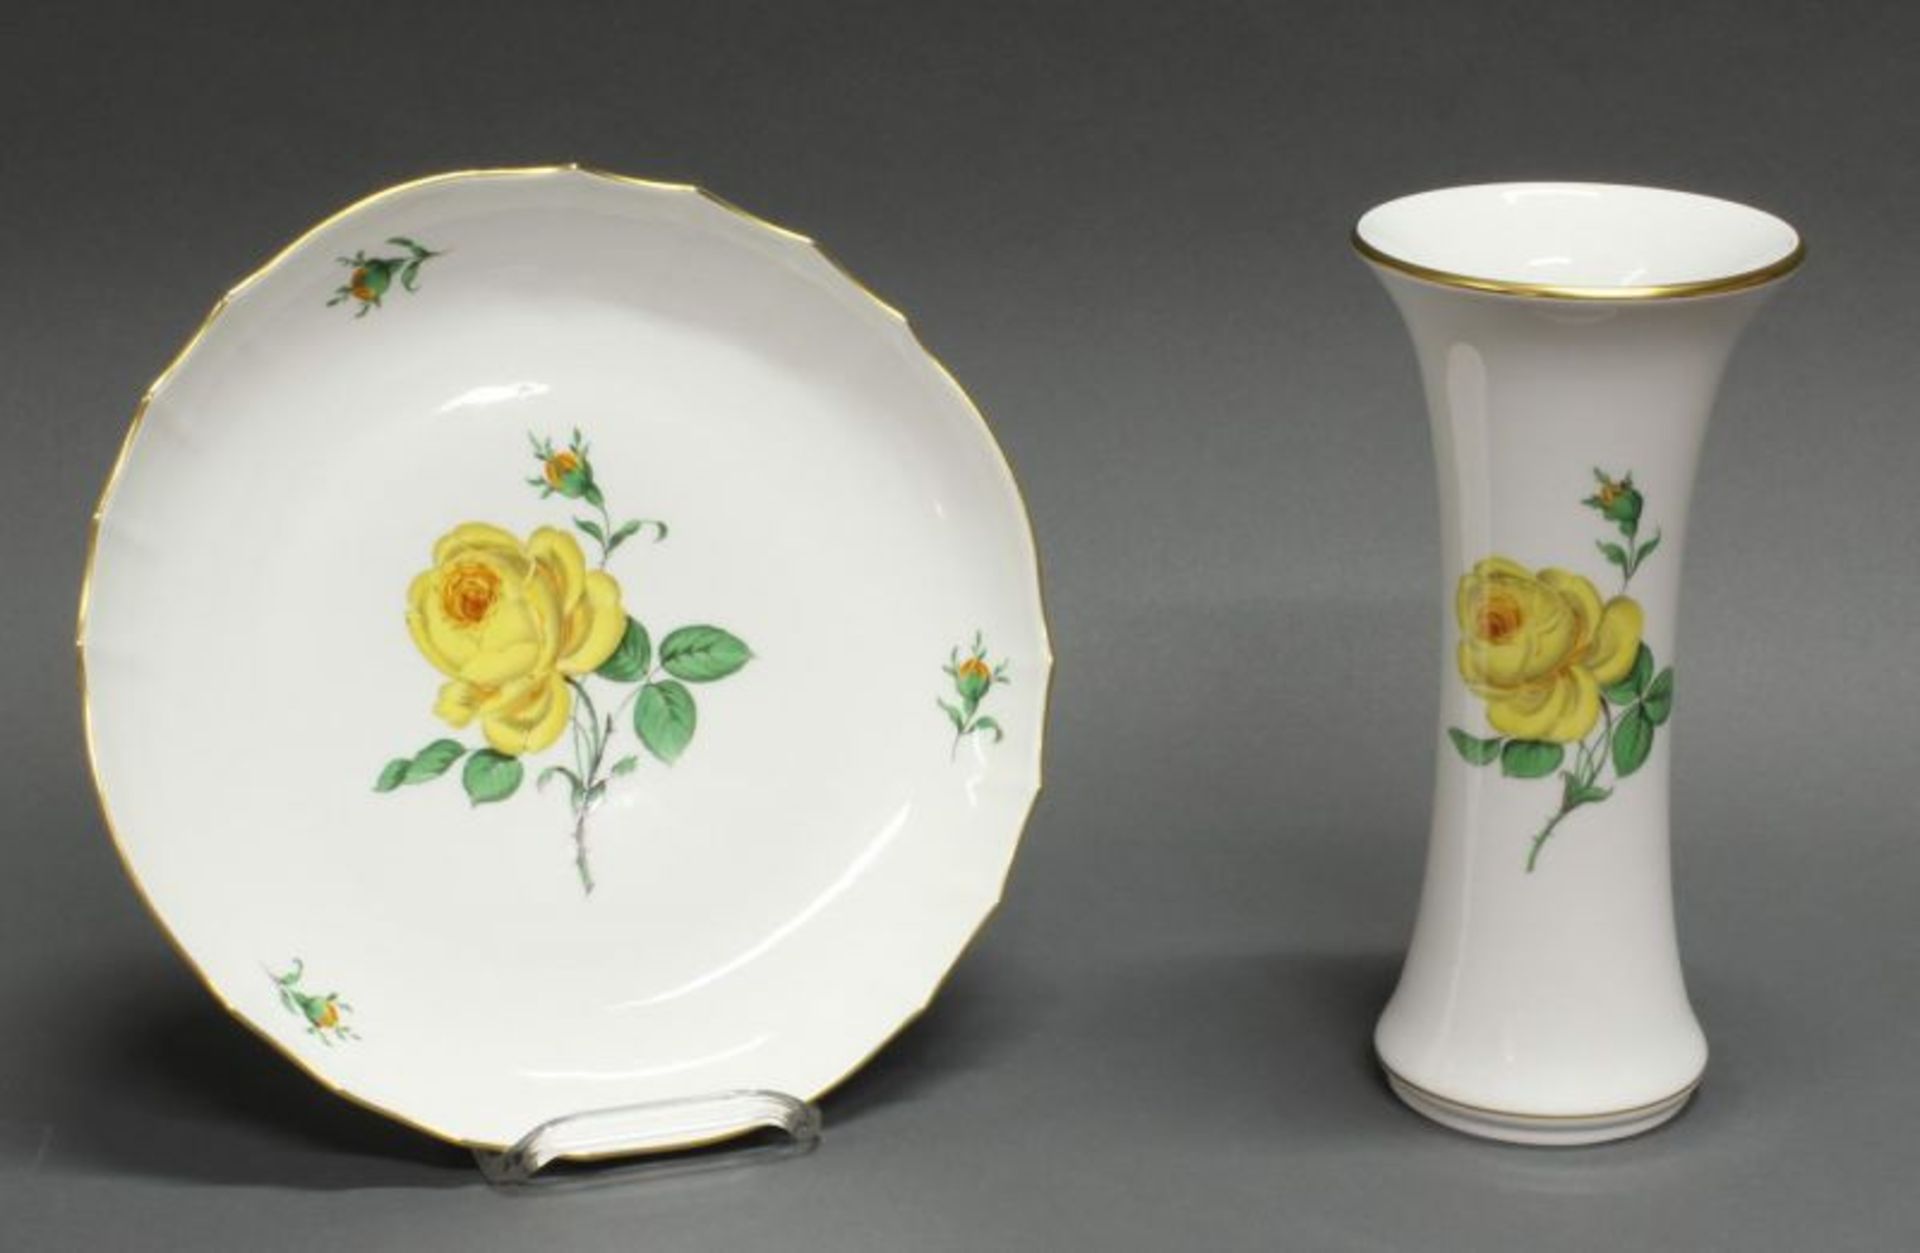 Platte und Vase, Meissen, Schwertermarke, 2. Wahl, gelbe Rose, Goldrand, ø 28.5 cm bzw. 25.3 cm hoch